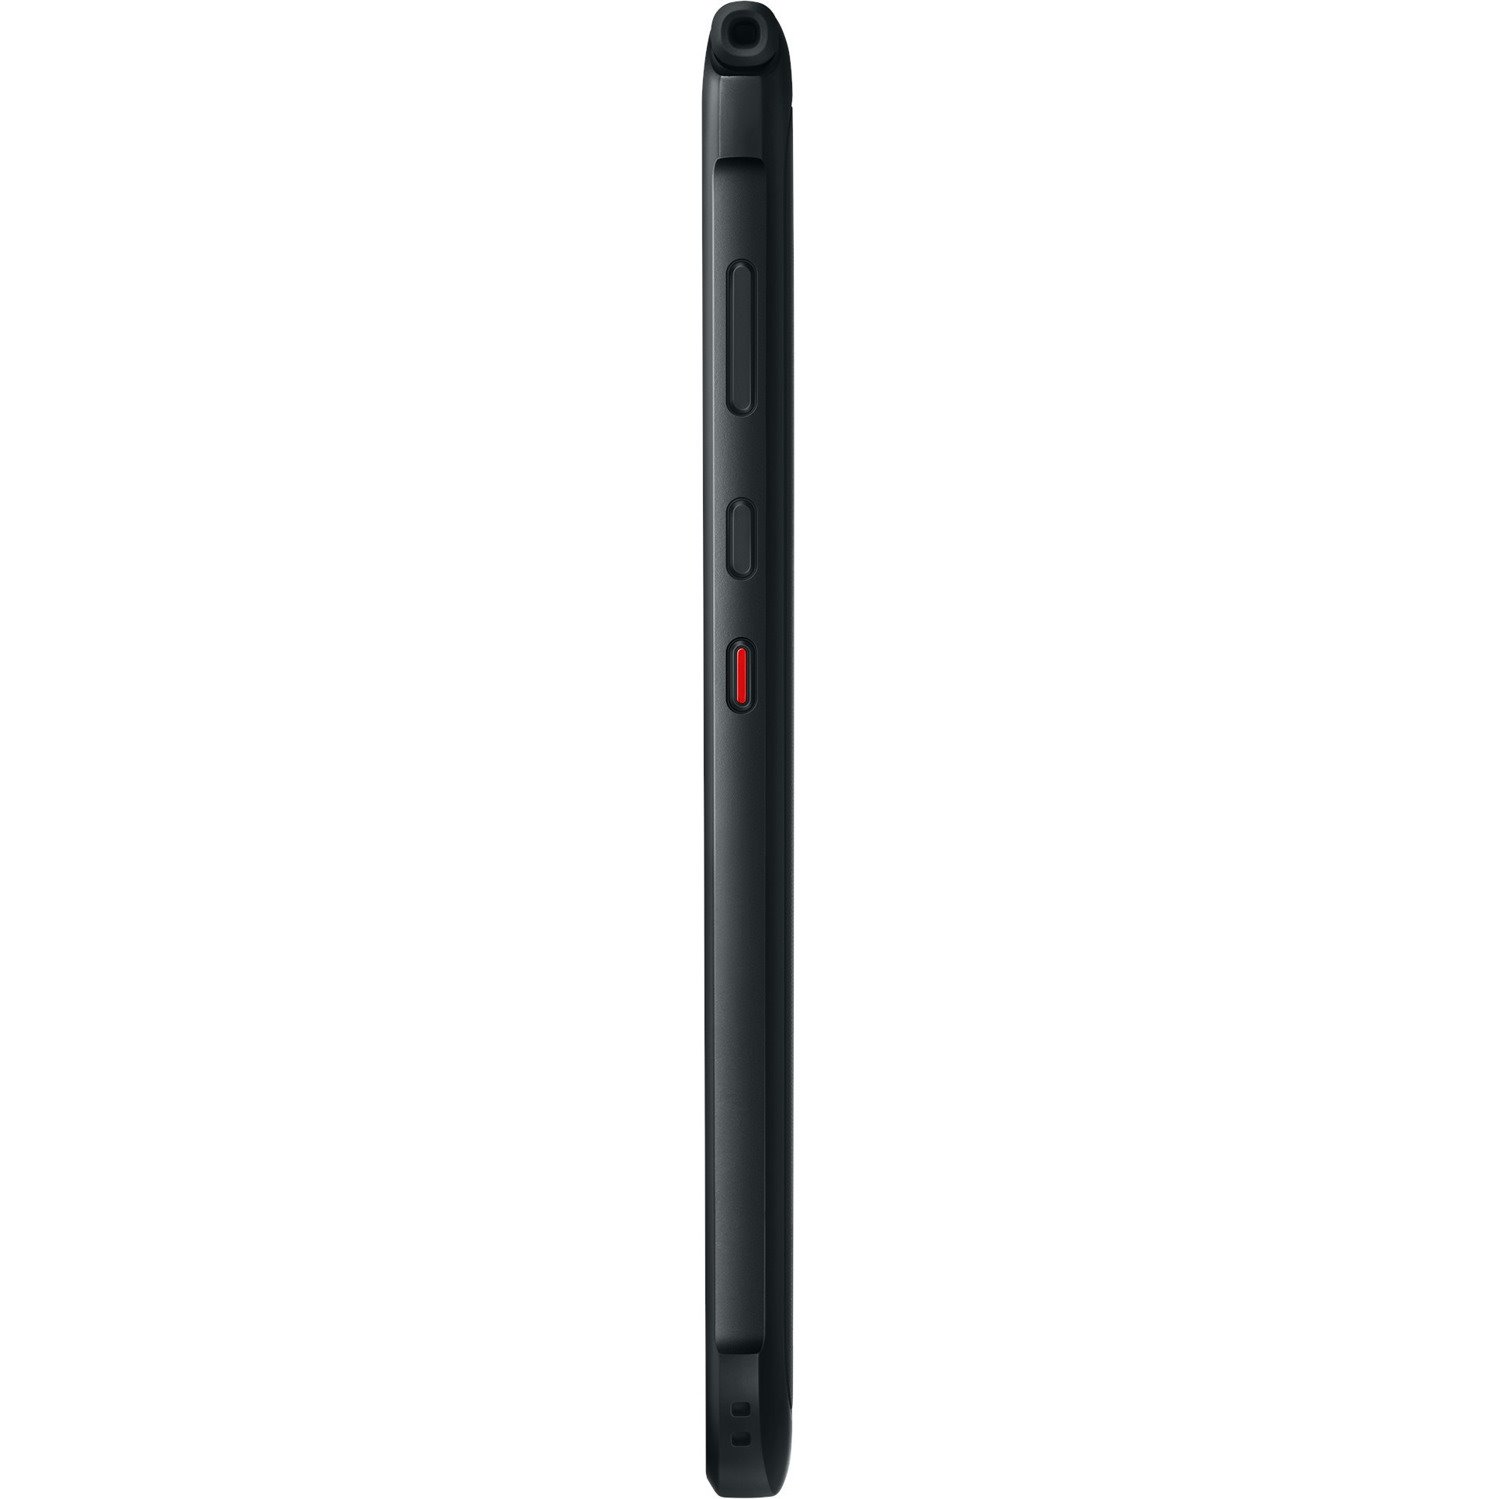 Samsung Galaxy Tab Active3 SM-T575 Rugged Tablet - 8" WUXGA - Samsung Exynos 9810 - 4 GB - 64 GB Storage - 4G - Black